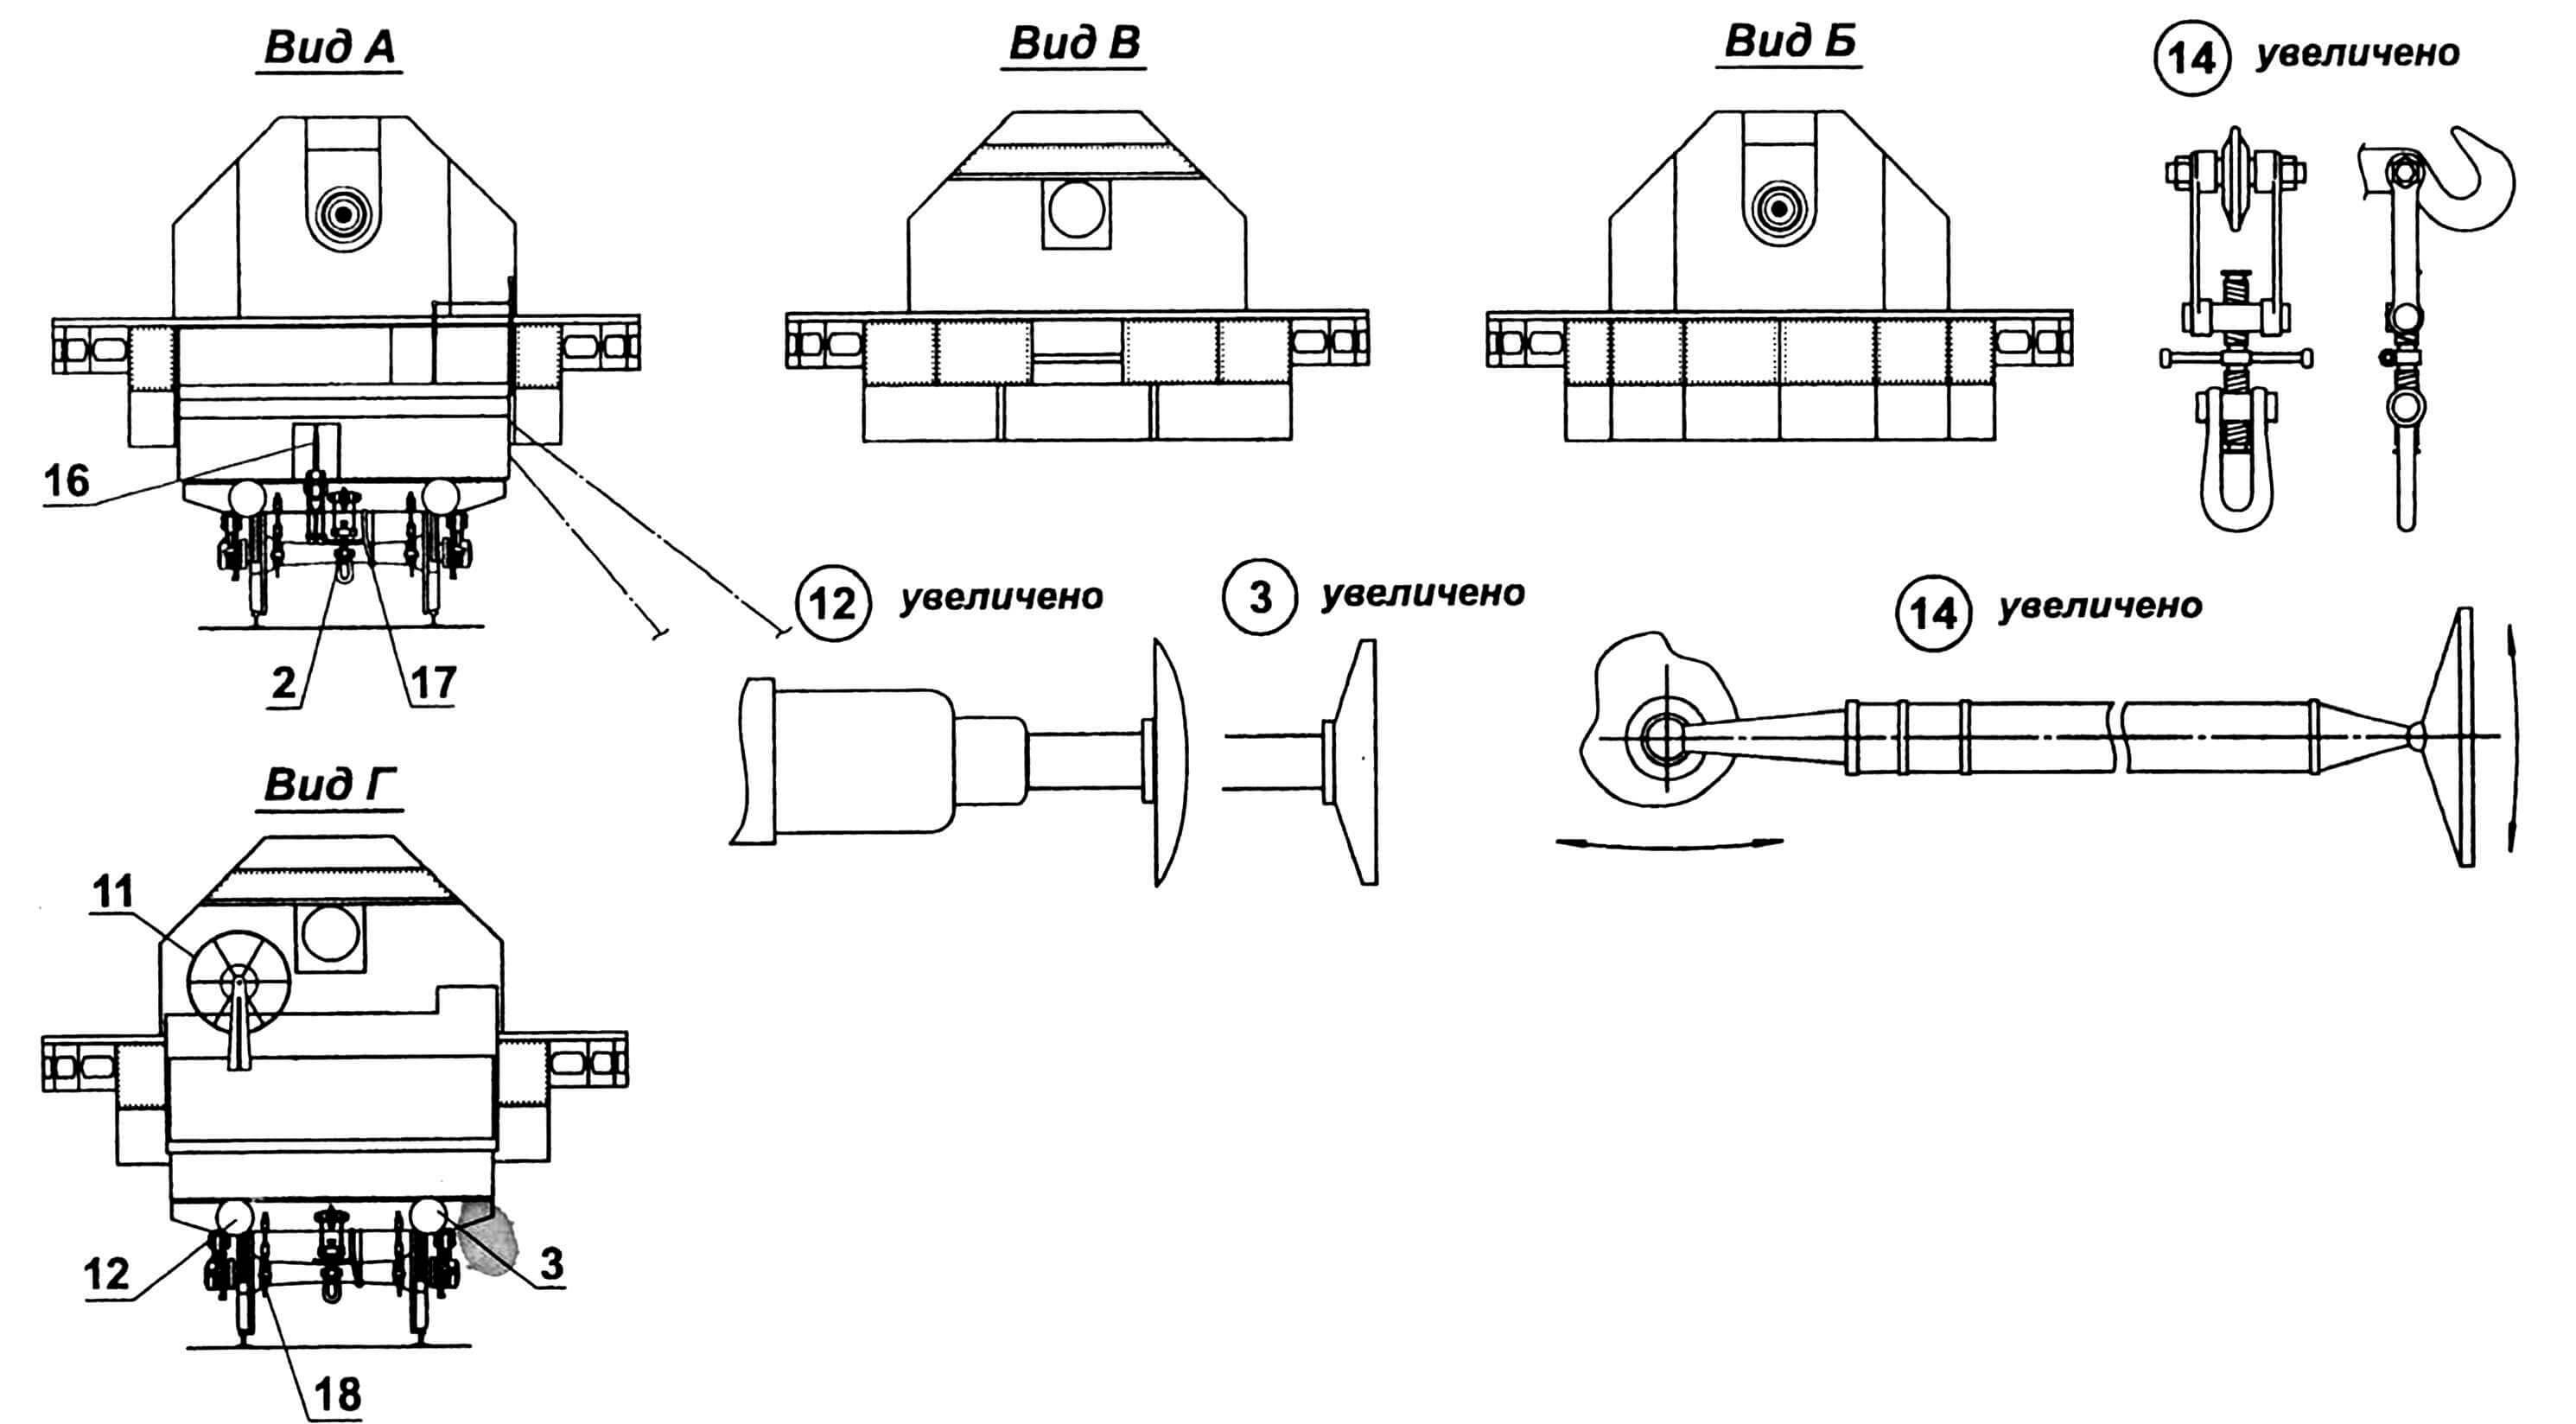 Транспортер ЖДАУ ТМ-1-180: 1 — тележка задняя; 2 — стяжка винтовая; 3 — буфер правый; 4 — отделение компрессорной станции; 5 — ограждение; 6 — ствол орудия Б-1-П; 7 — щит орудия; 8 — платформа поворотная; 9 — лоток подачи боеприпасов; 10 — отделение электростанции «Коммунар»; 11 — барабан кабельный; 12 — буфер левый; 13 — тележка передняя; 14 — опоры откидывающиеся (8 шт.); 15 — балка главная; 16 — рычаг тормоза; 17 — шланг воздушной тормозной системы, соединительный; 18 — цепь страховочная.